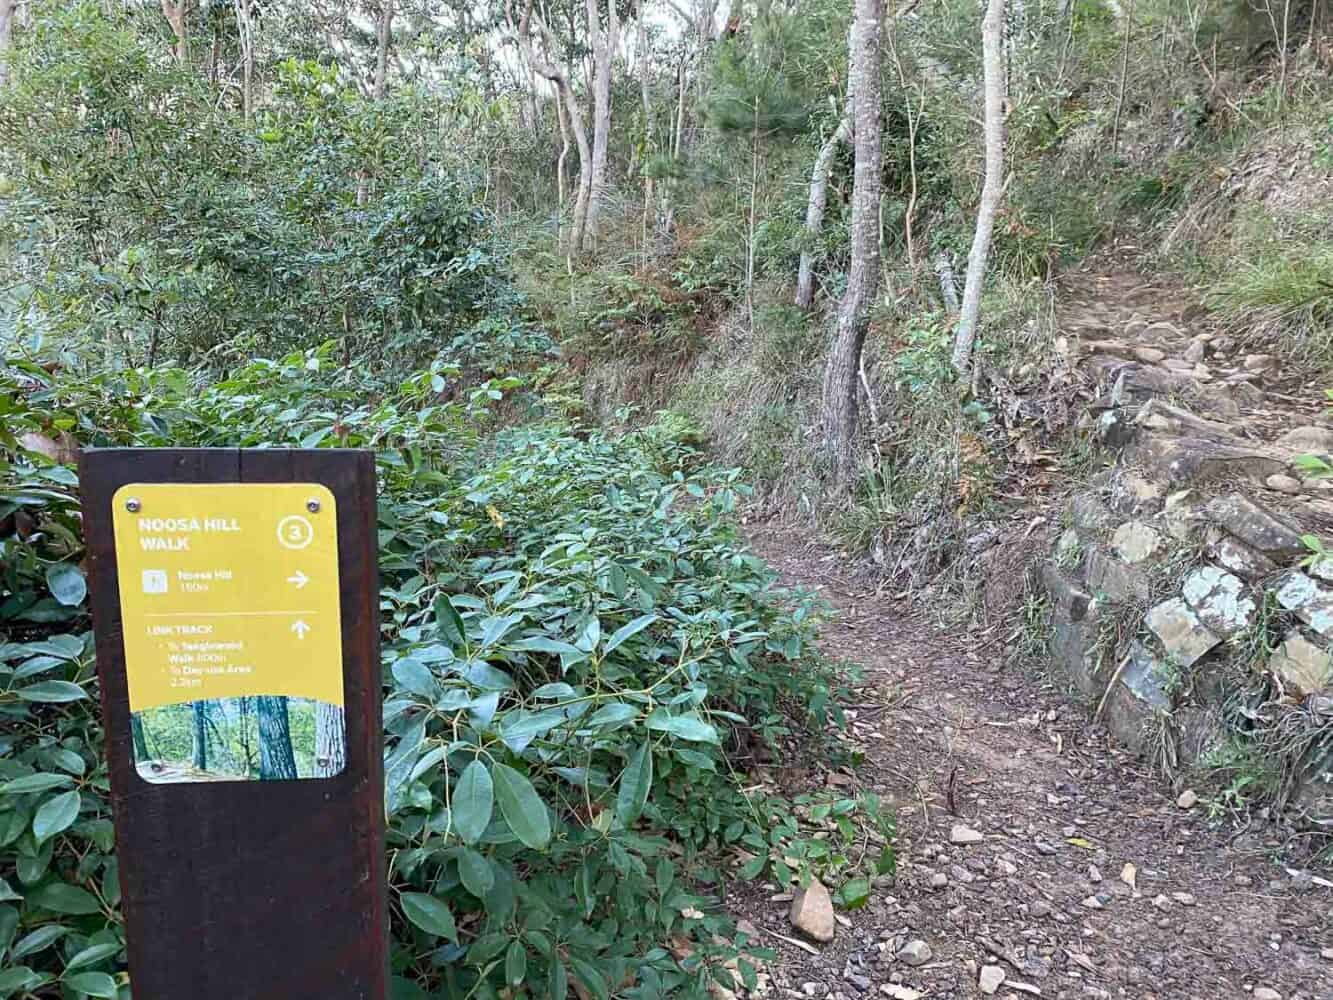 Noosa Hill Walk sign, Noosa National Park, Queensland, Australia